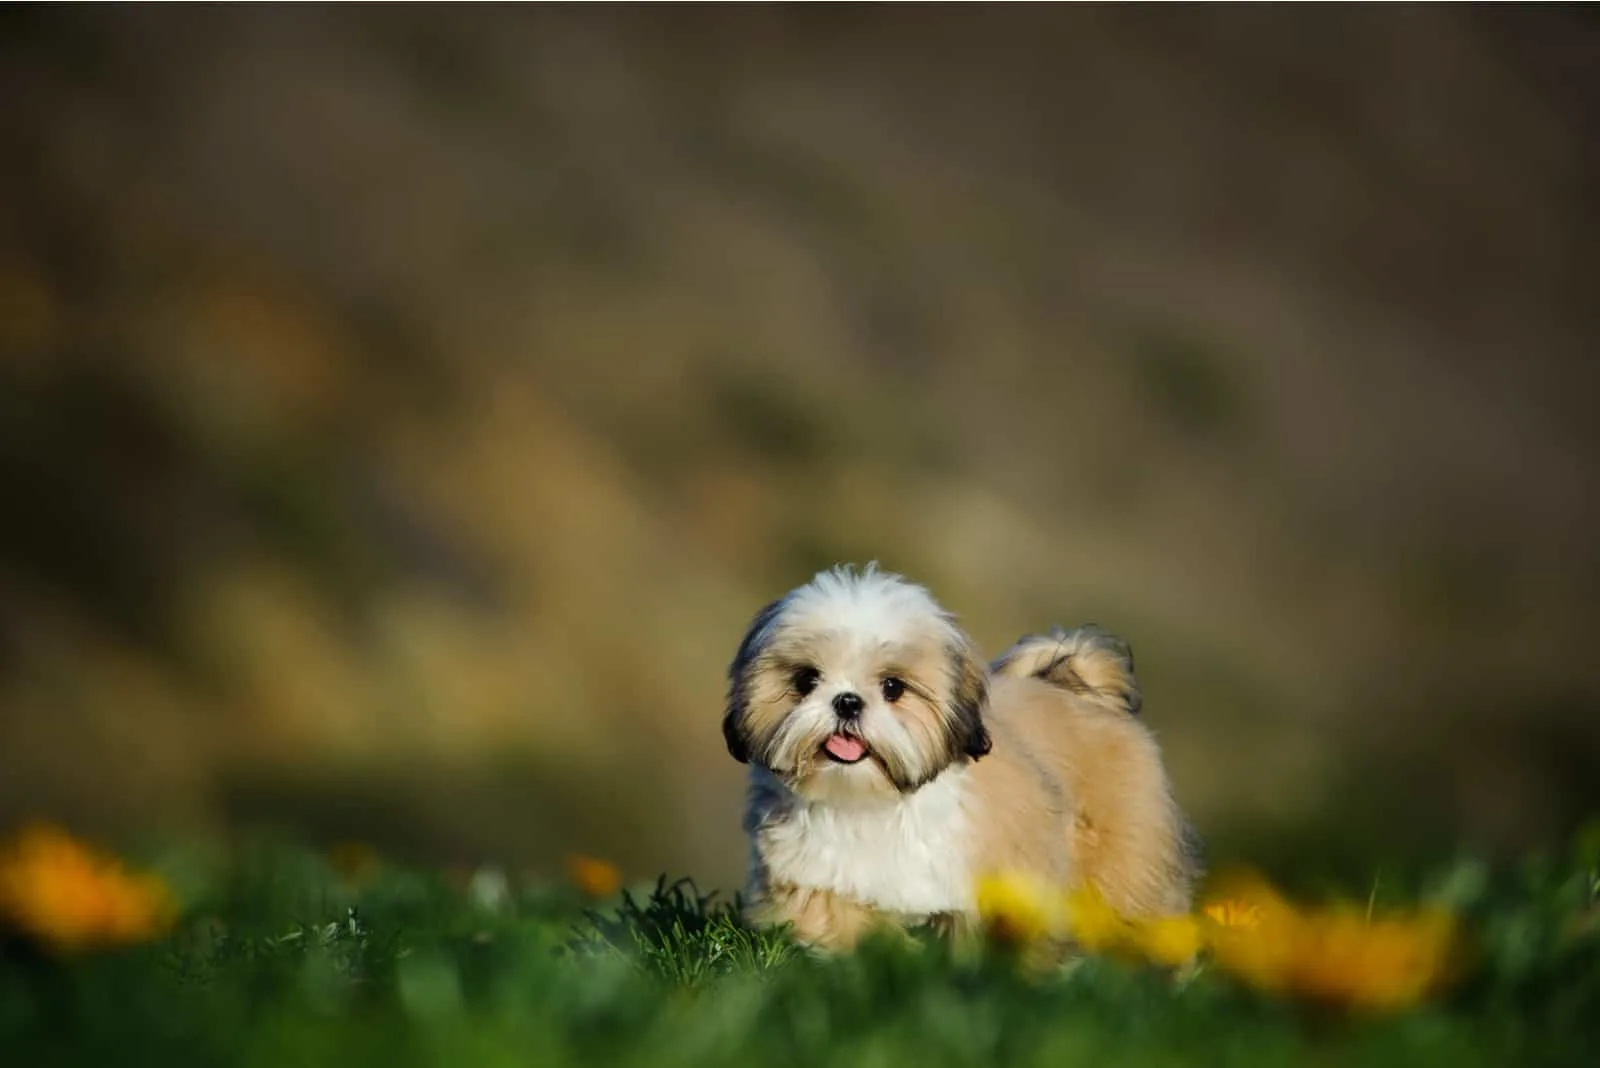 Shih Tzu puppy in flower field